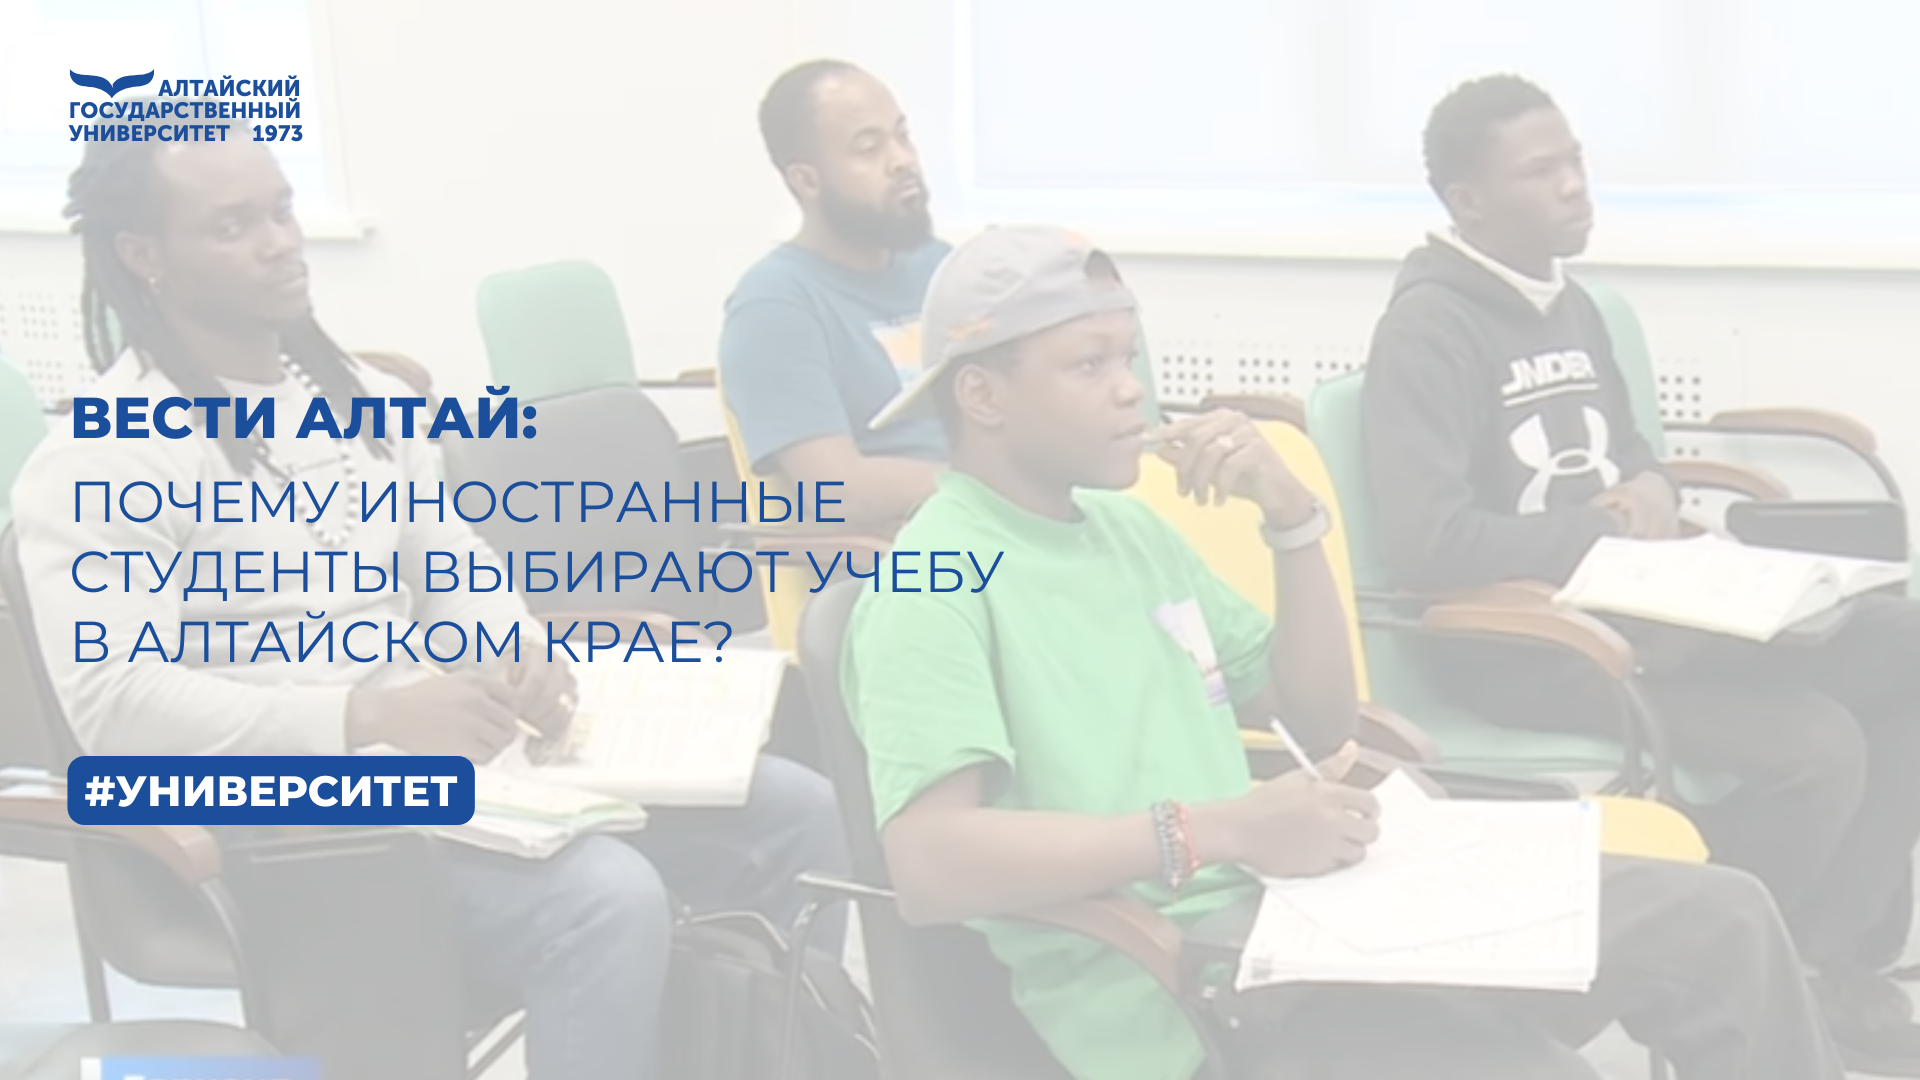 Почему иностранные студенты выбирают учёбу в Алтайском крае? | Вести Алтай